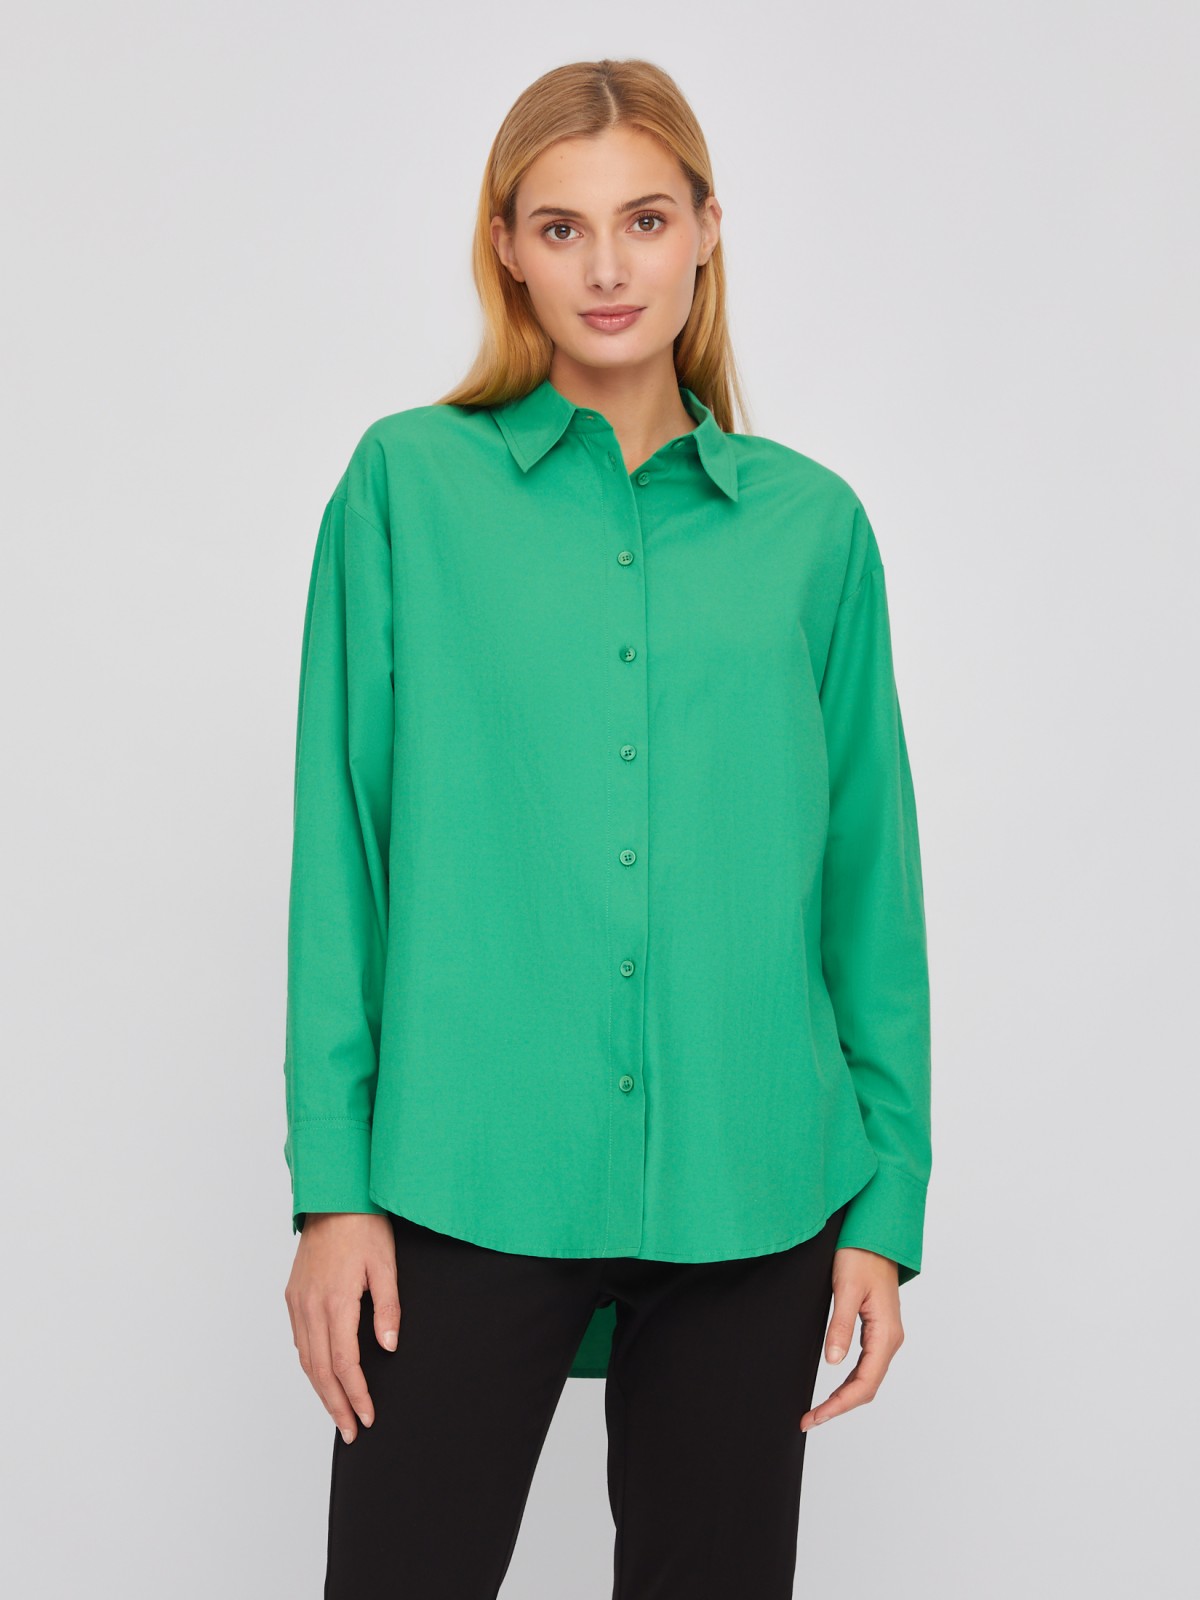 Рубашка свободного силуэта с длинным рукавом zolla 02411117Y553, цвет зеленый, размер XS - фото 3